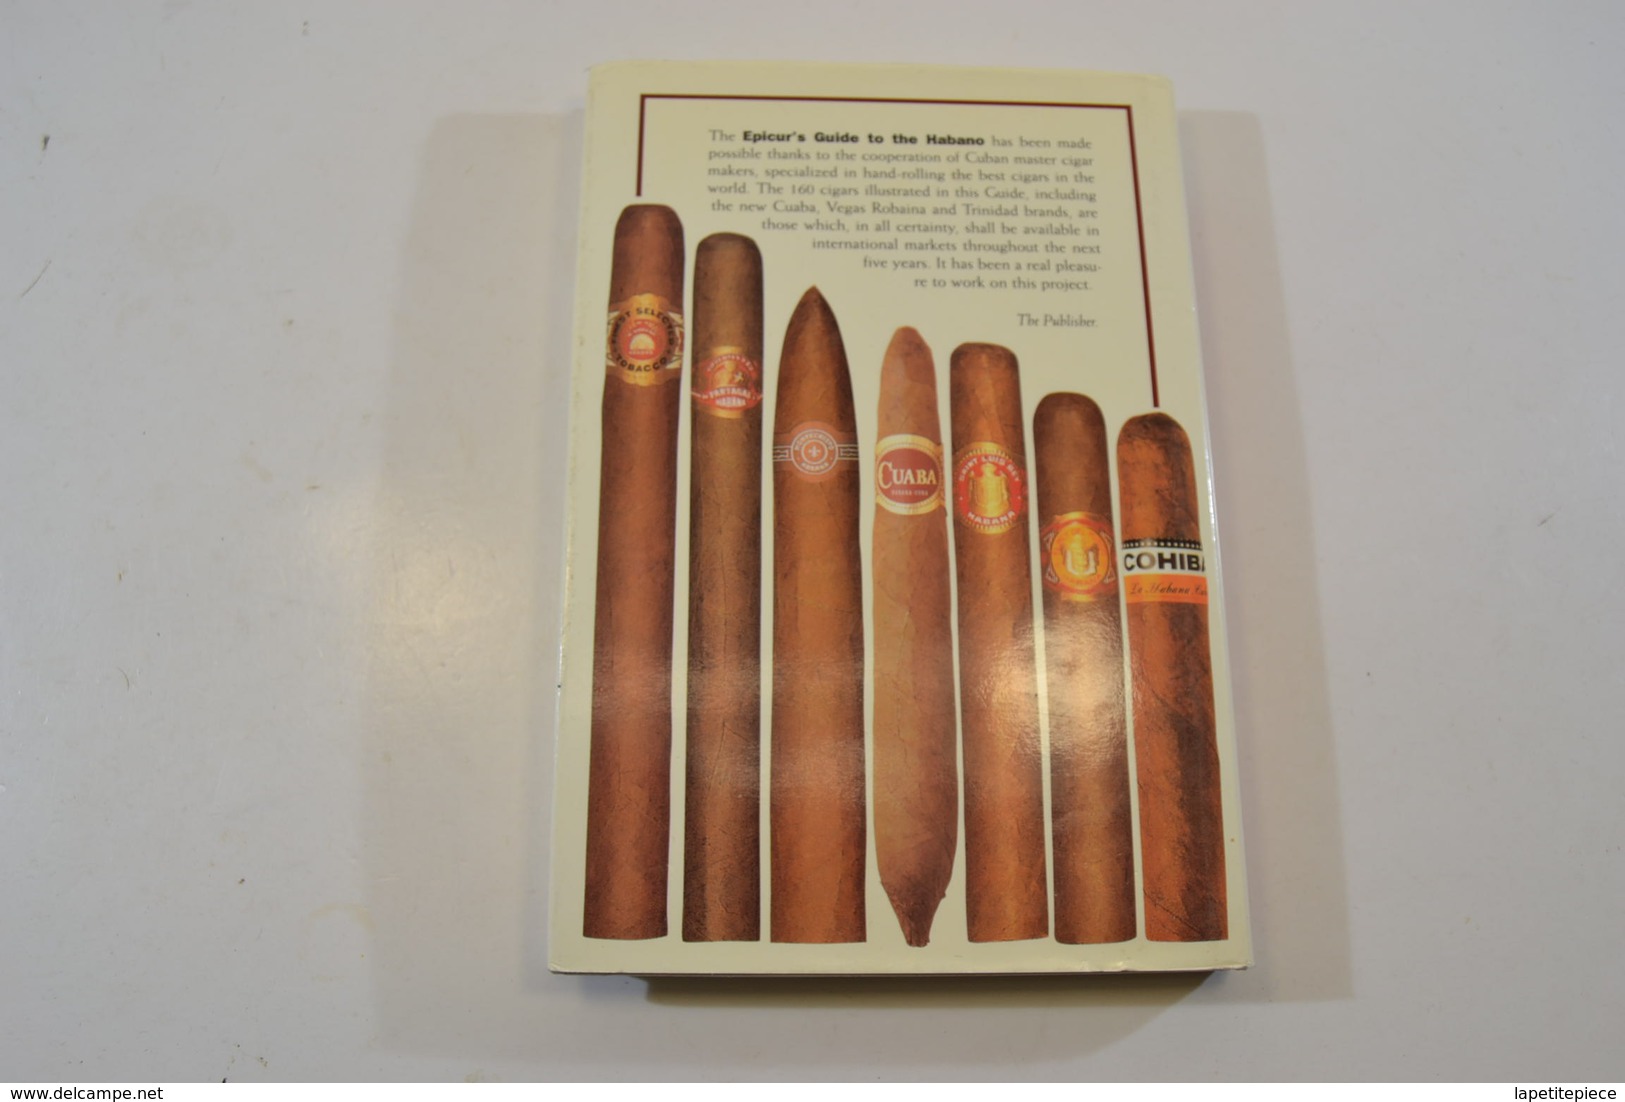 Livre / Guide Cigares Cubains Habano / Cuba. Epicur's Guide To The Habano. - Autres & Non Classés